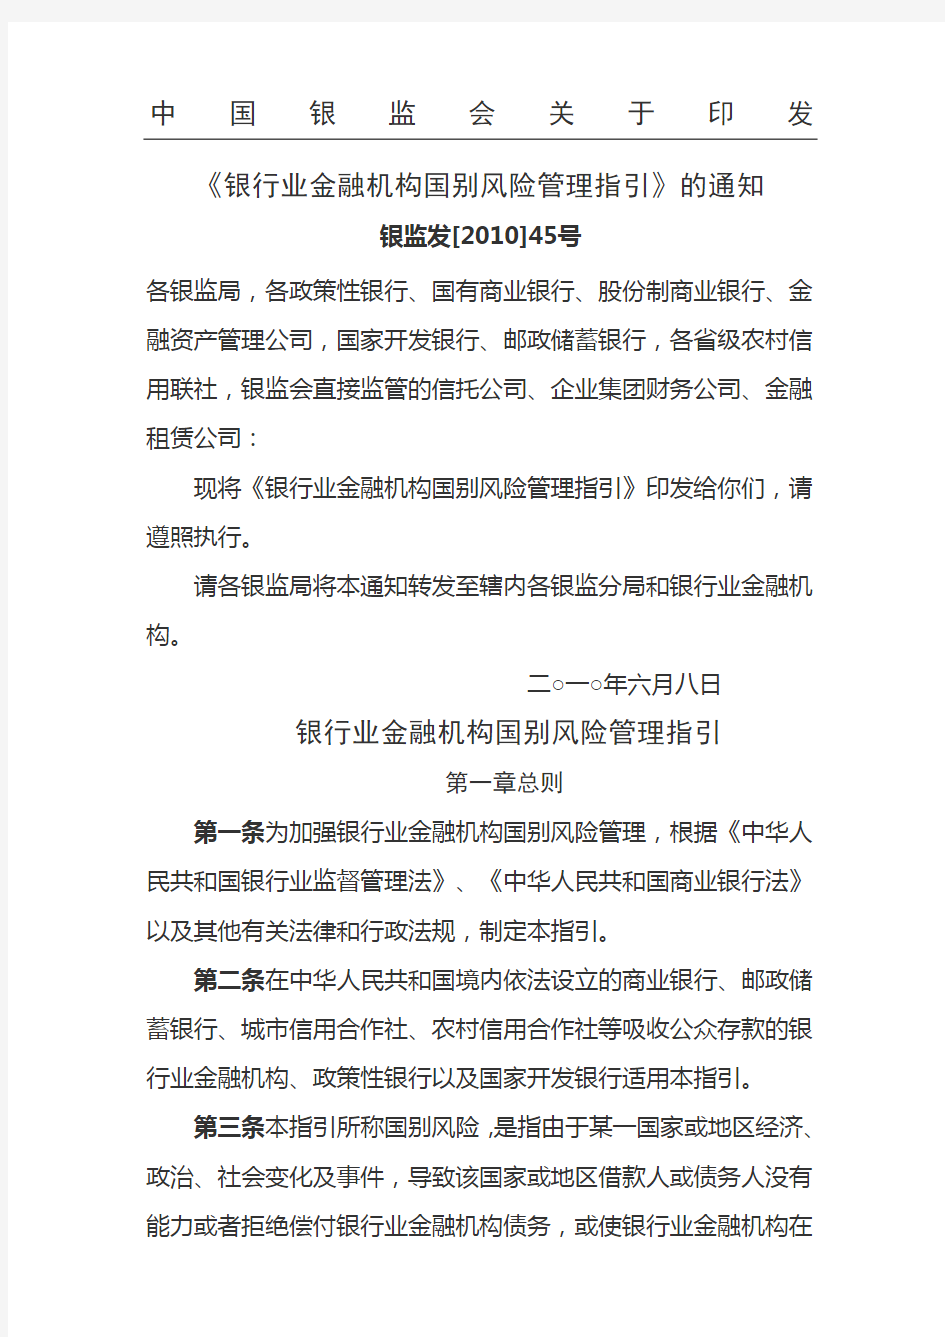 中国银监会关于印发《银行业金融机构国别风险管理指引》的通知